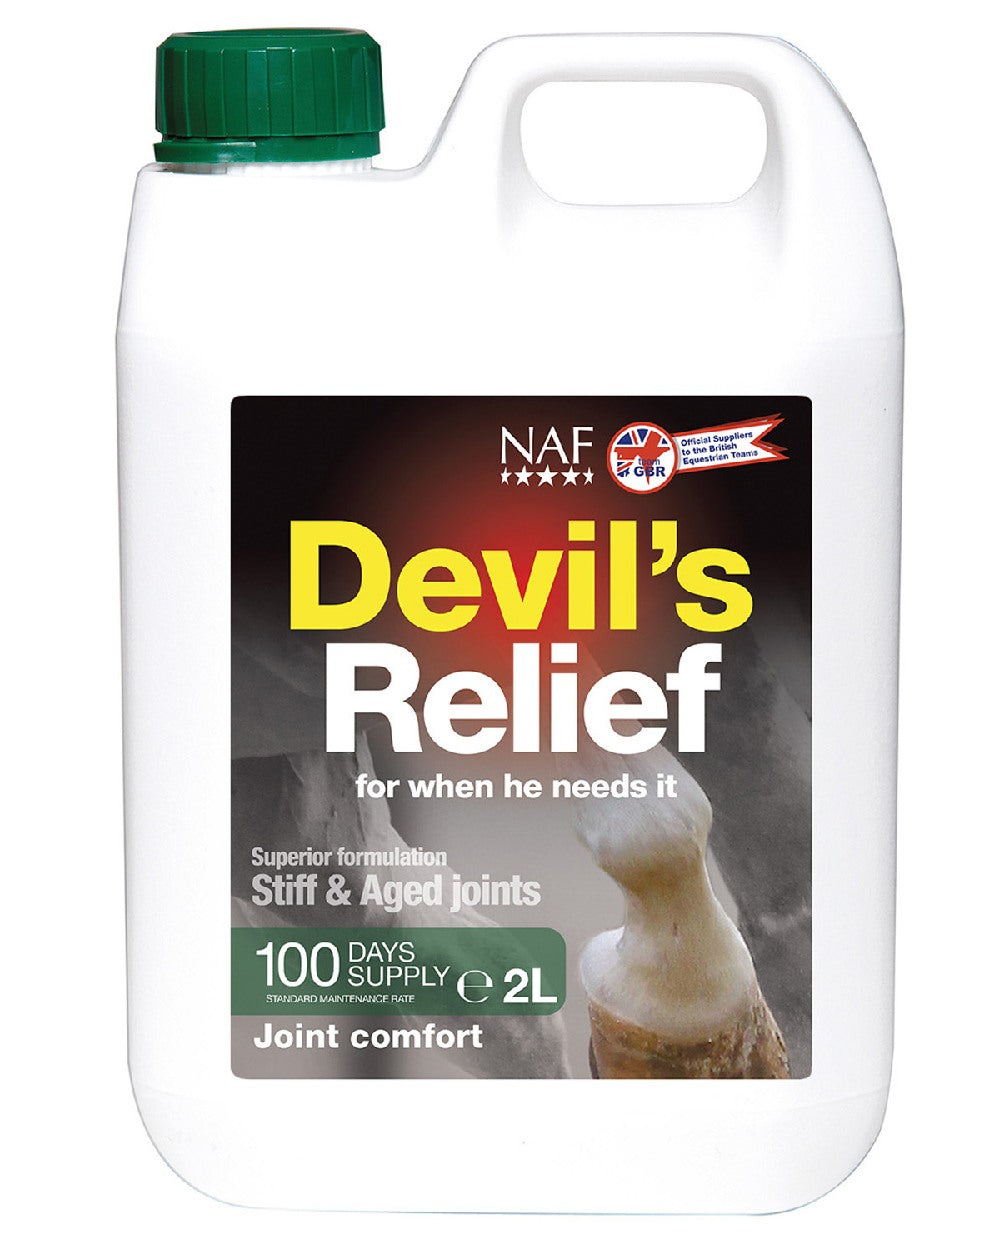 NAF Devils Relief 2L on white background